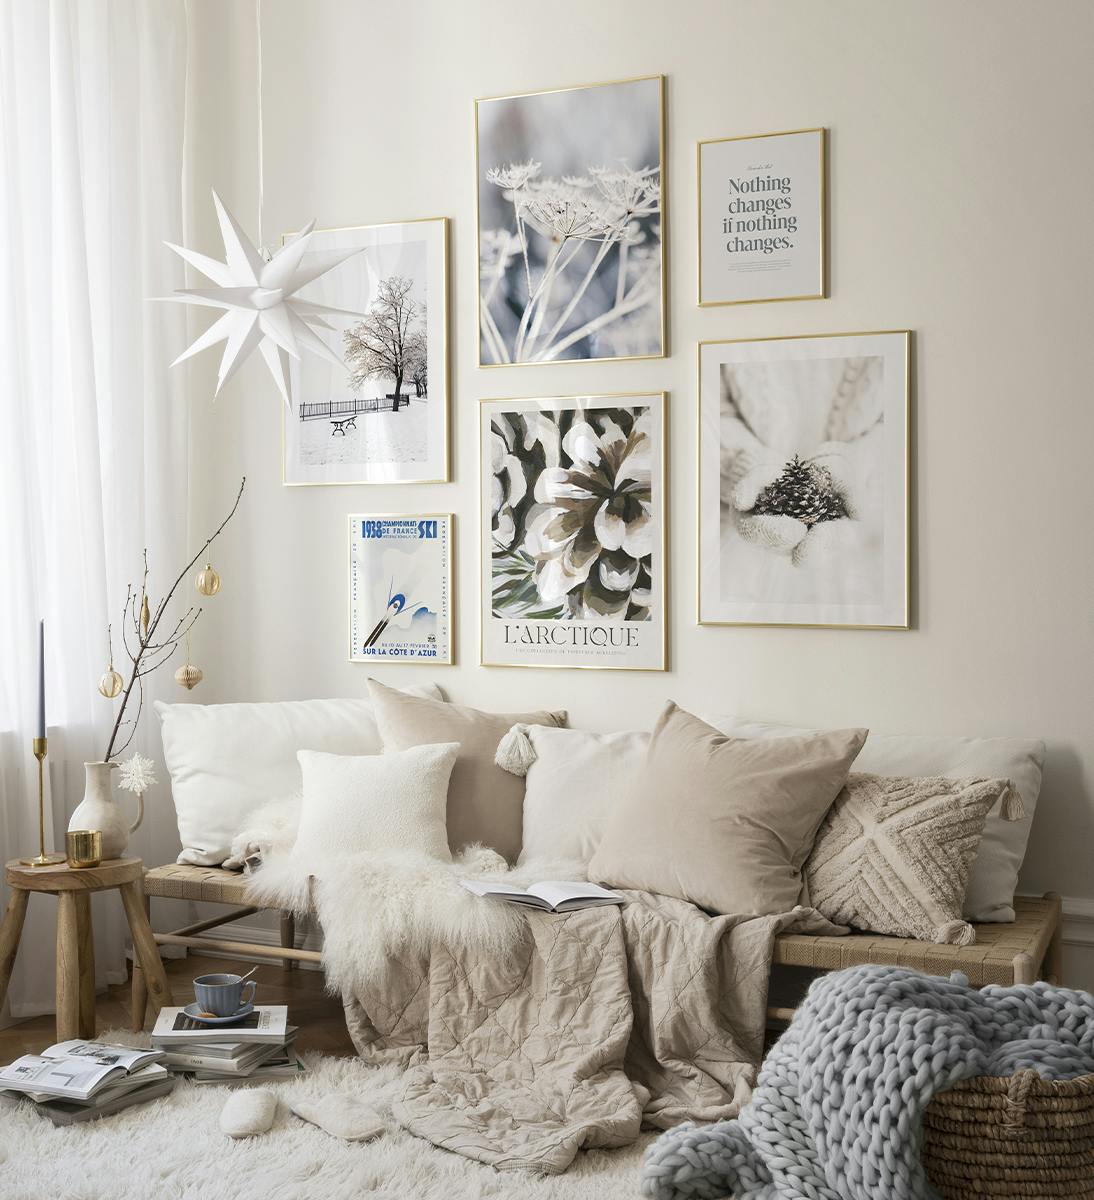 Zamień swój salon w zimowy cudowny kraj za pomocą galerii obrazów w odcieniach bieli i beżu ze złotymi ramkami.